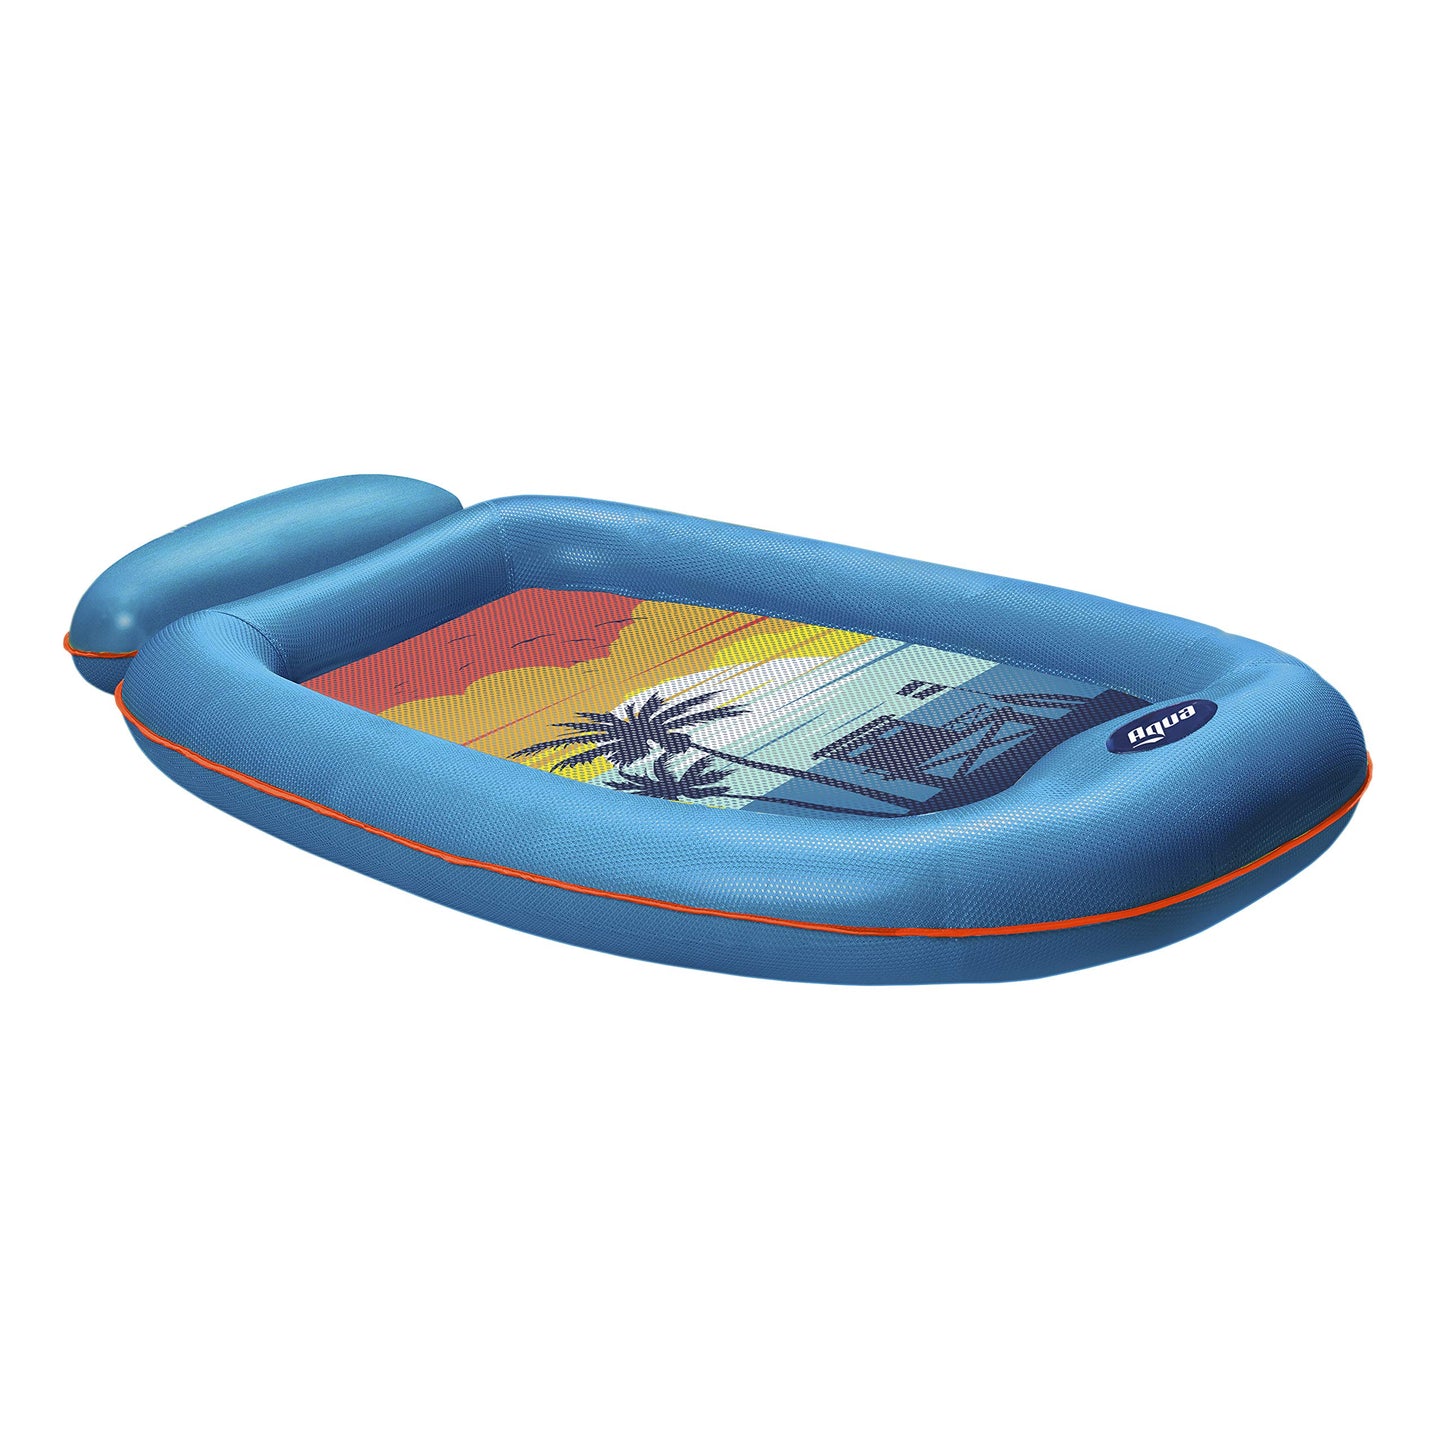 Aqua Luxury Comfort Pool Float Lounges, Fauteuils inclinables - Plusieurs couleurs/styles - pour adultes et enfants Floating Blue/Orange Sunset Comfort Lounge